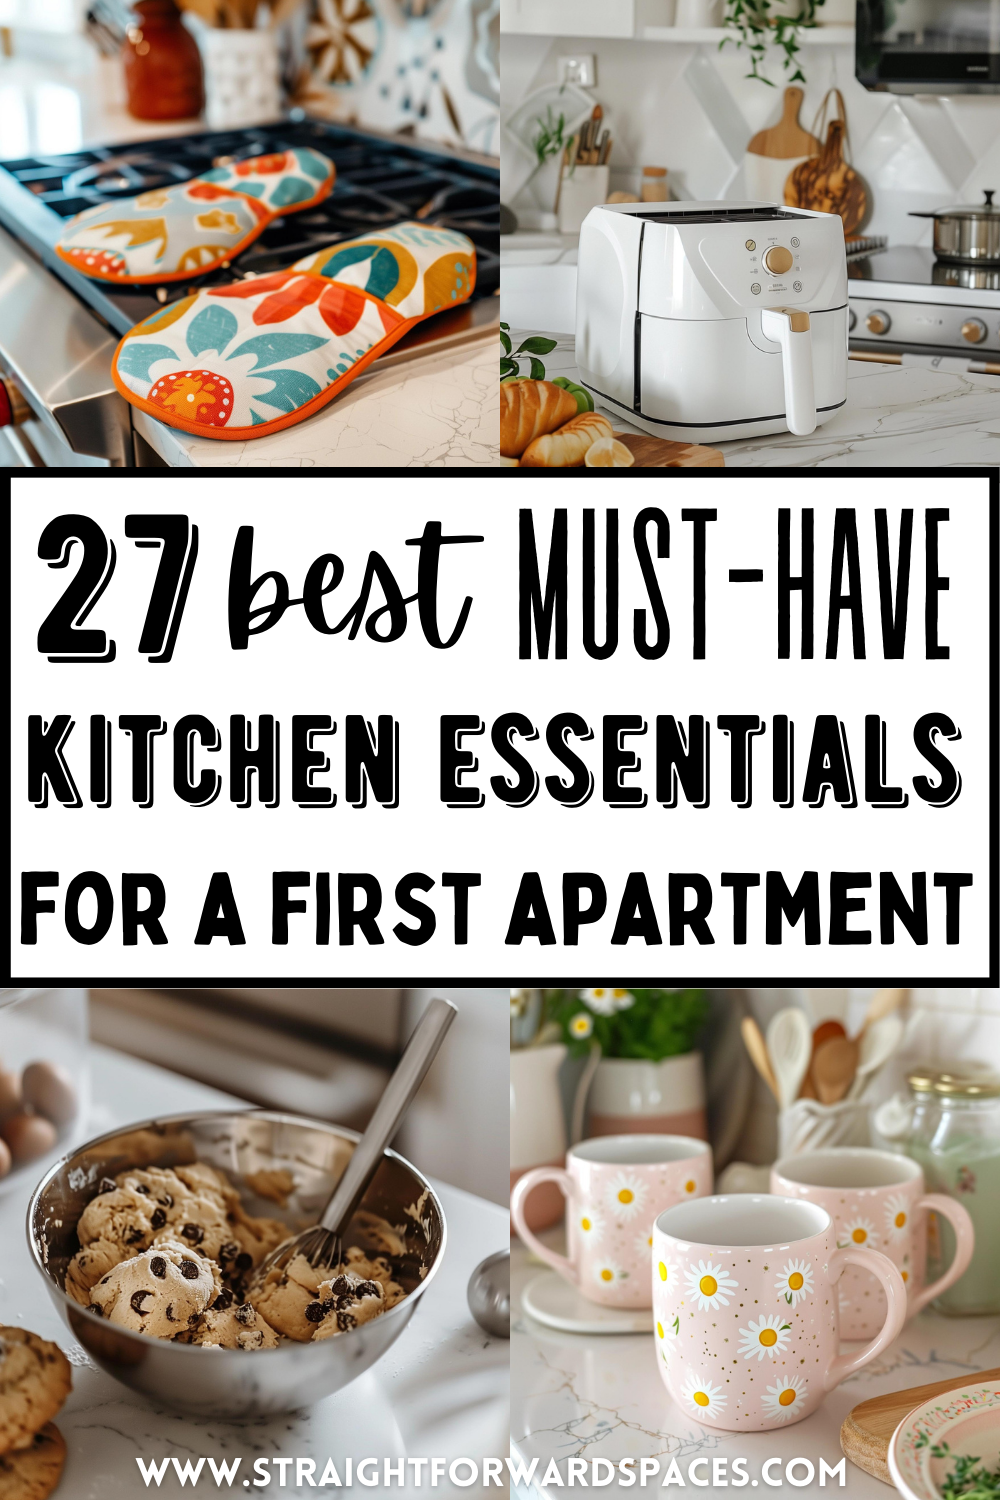 kitchen essentials for first apartment